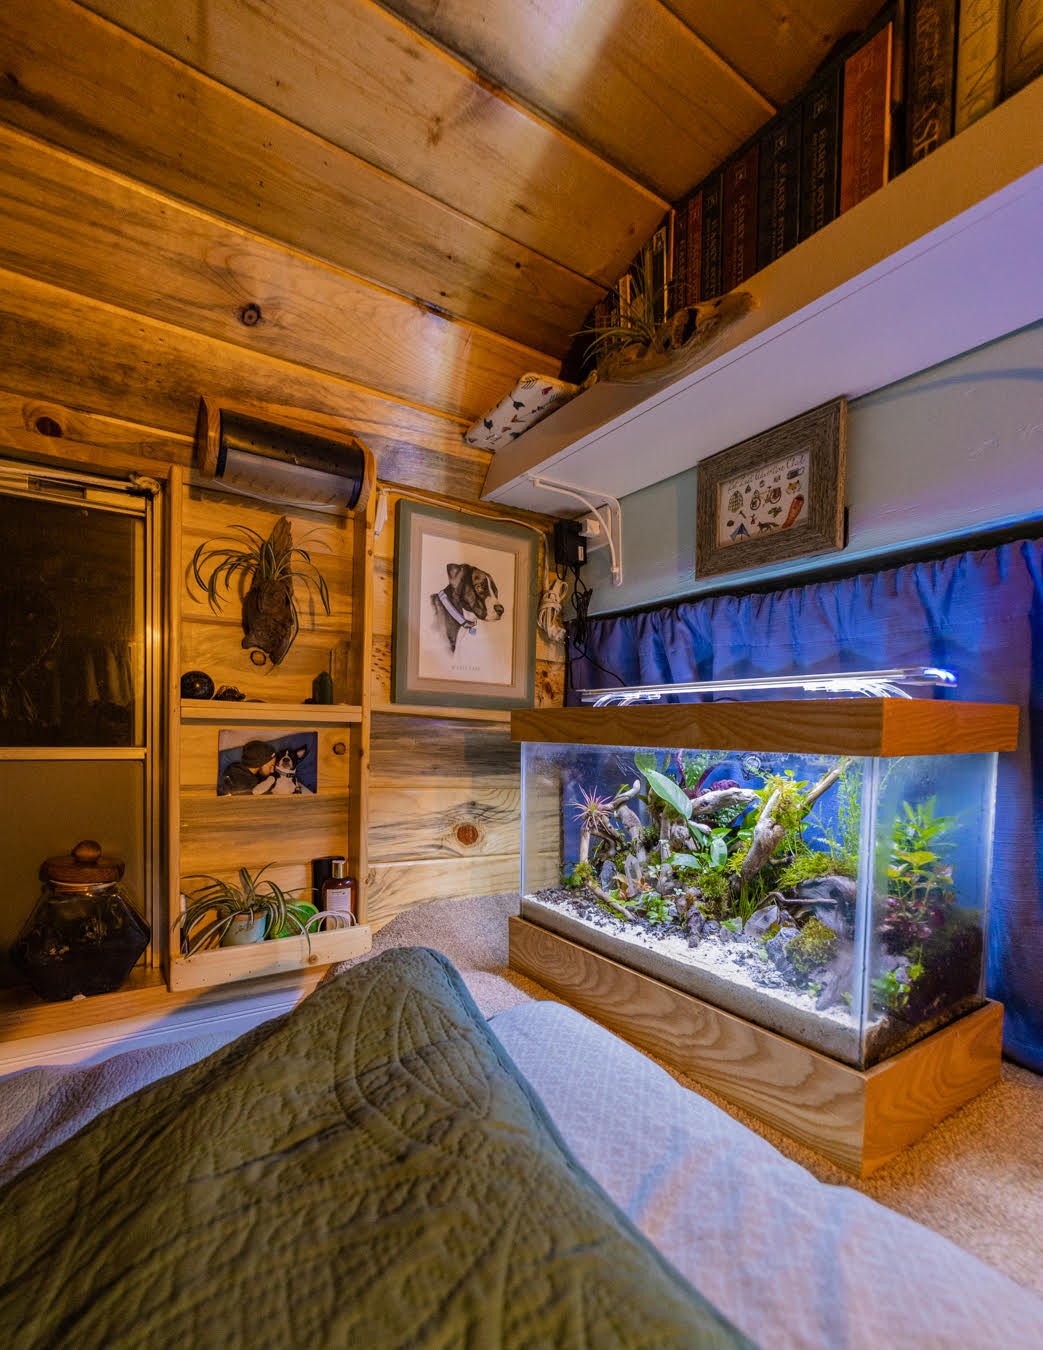 Finnex Aquarium LED Planted+ HLC 24/7 Series: 20, 24, 30, 36, 48 inche